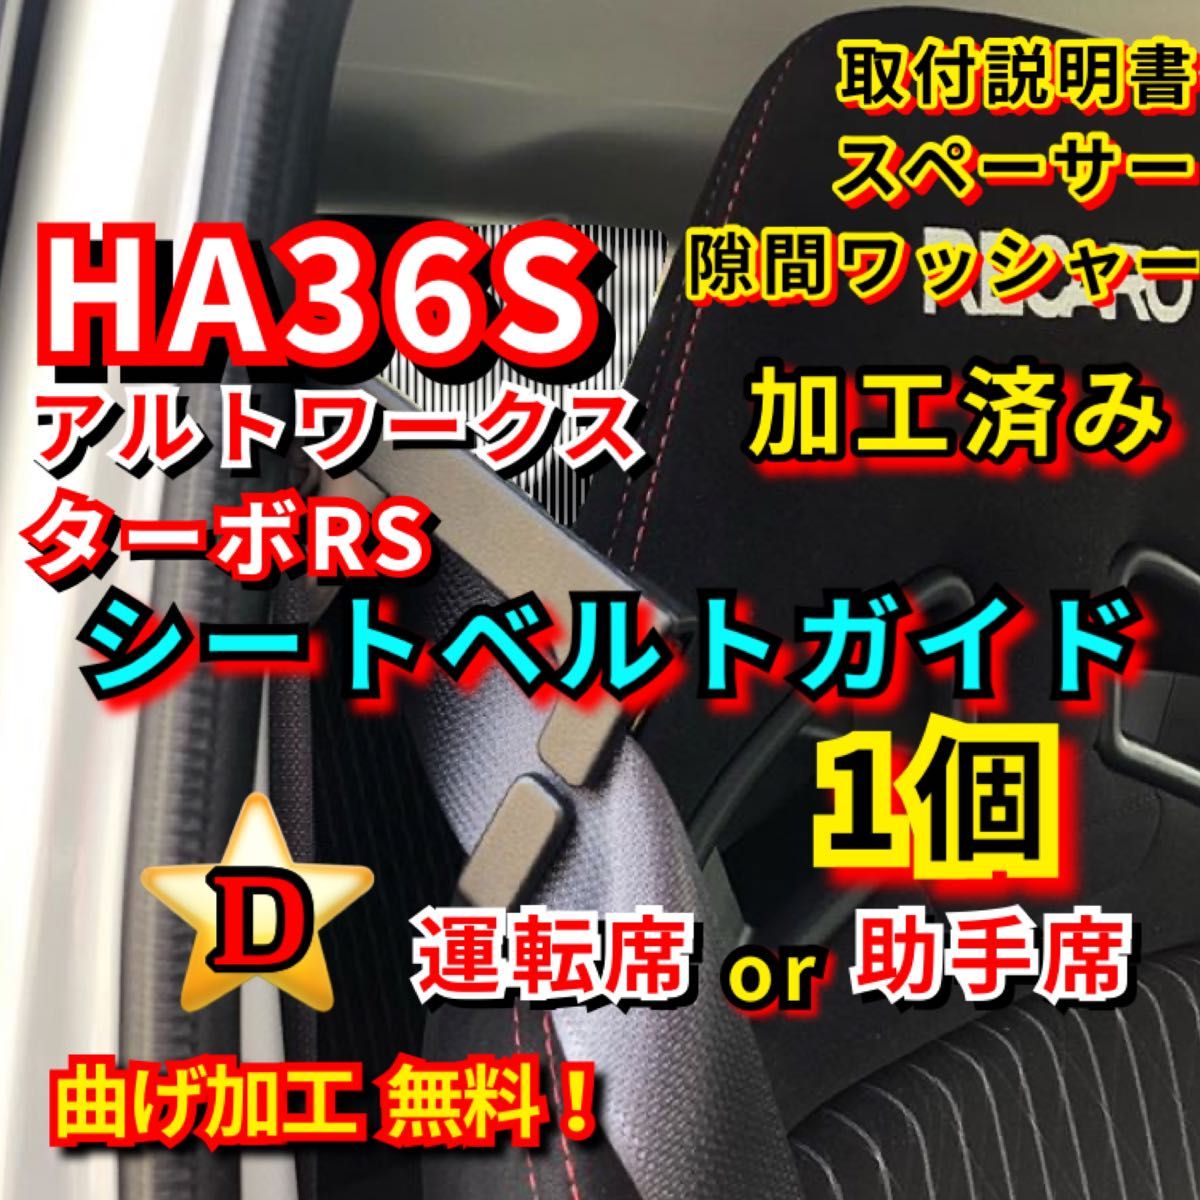 D- HA36S アルトワークス ターボRS 【運転席 or 助手席】加工済み シートベルトガイド サポート サポーター アーム